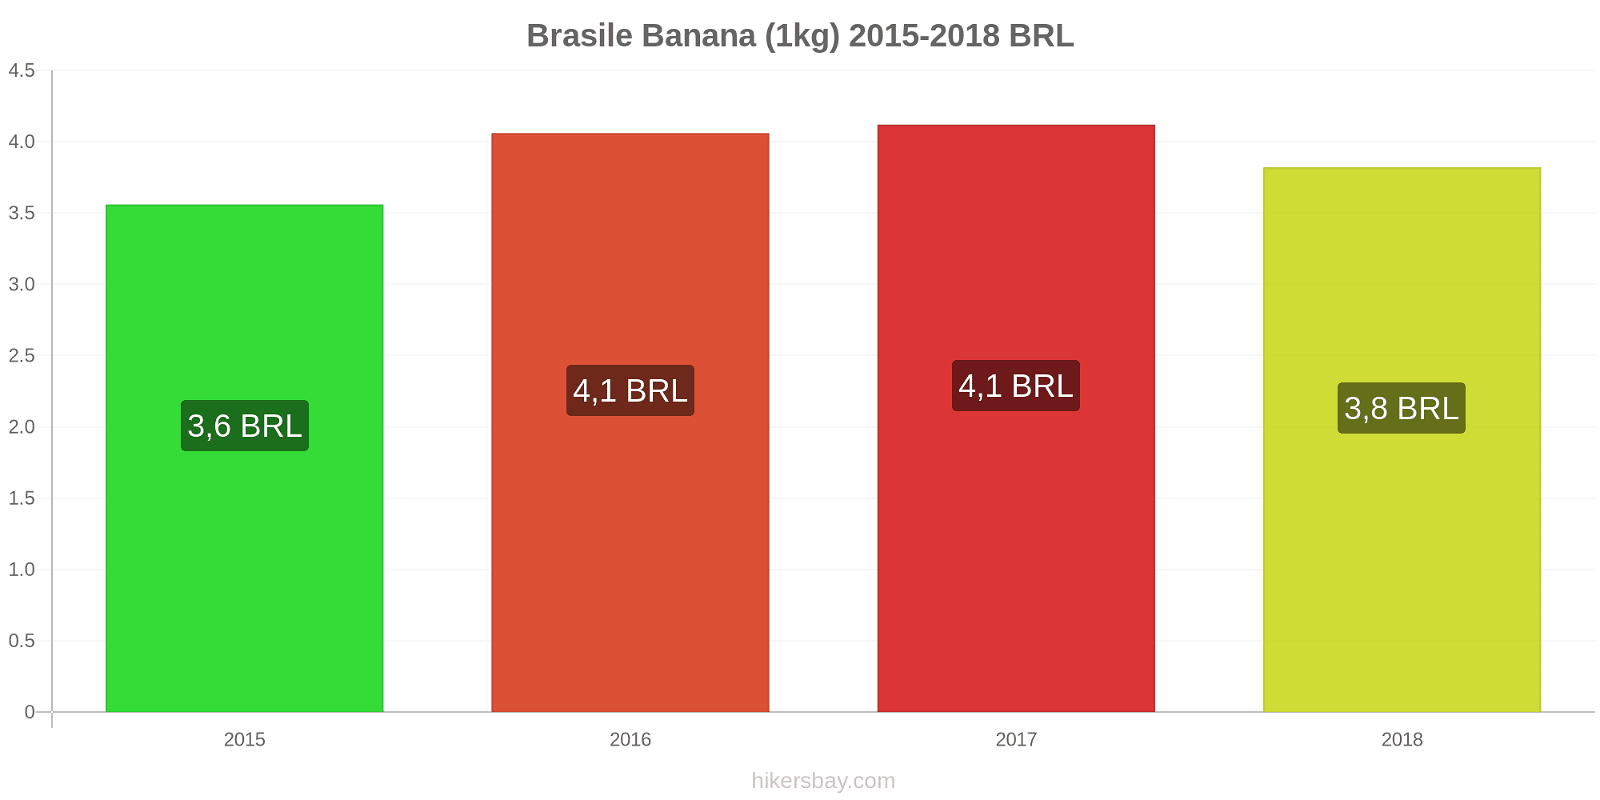 Brasile cambi di prezzo Banane (1kg) hikersbay.com